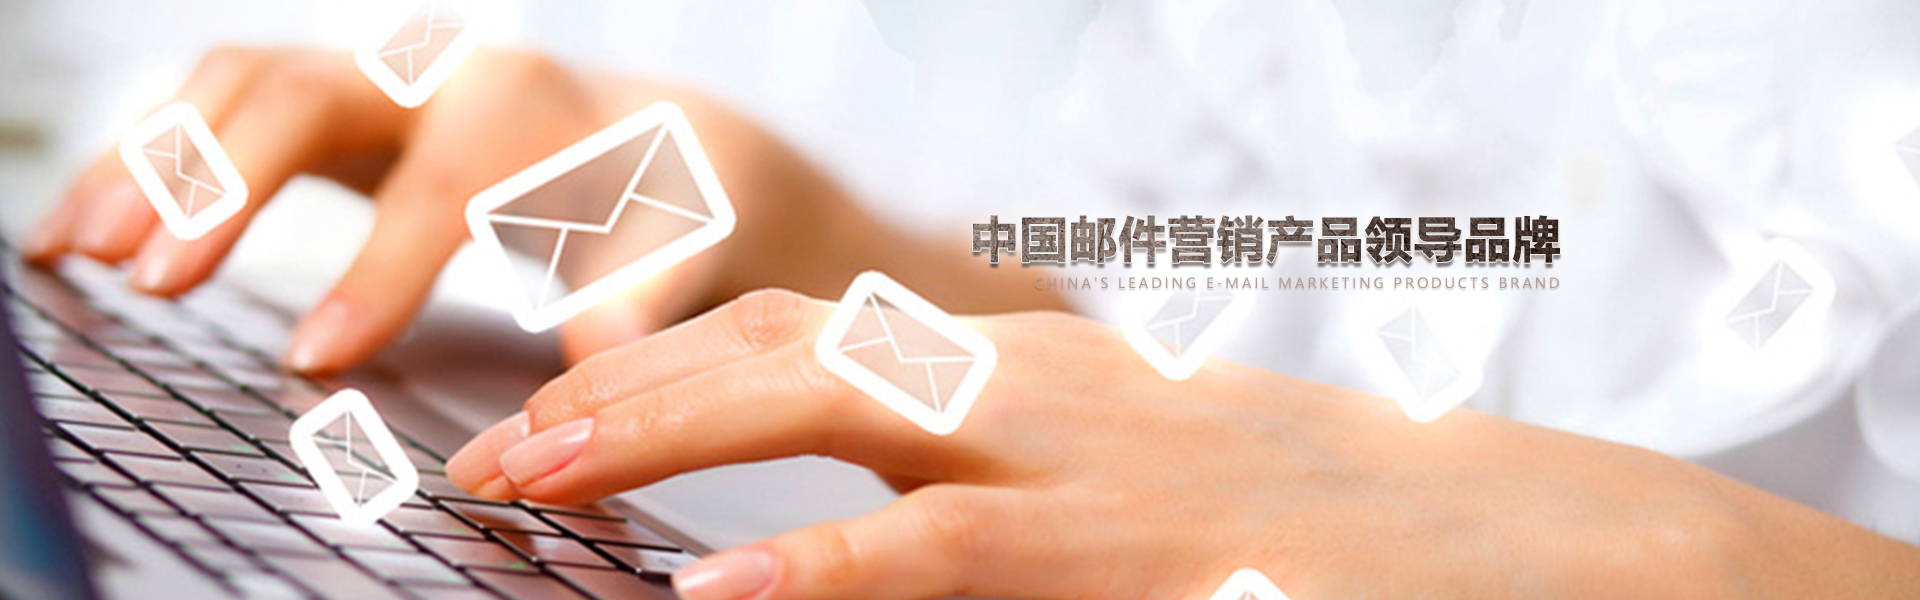 中国邮件营销服务领导�者,帮助数千企№业从事EDM邮件营销,中※国数据商城网因为专业所有出色